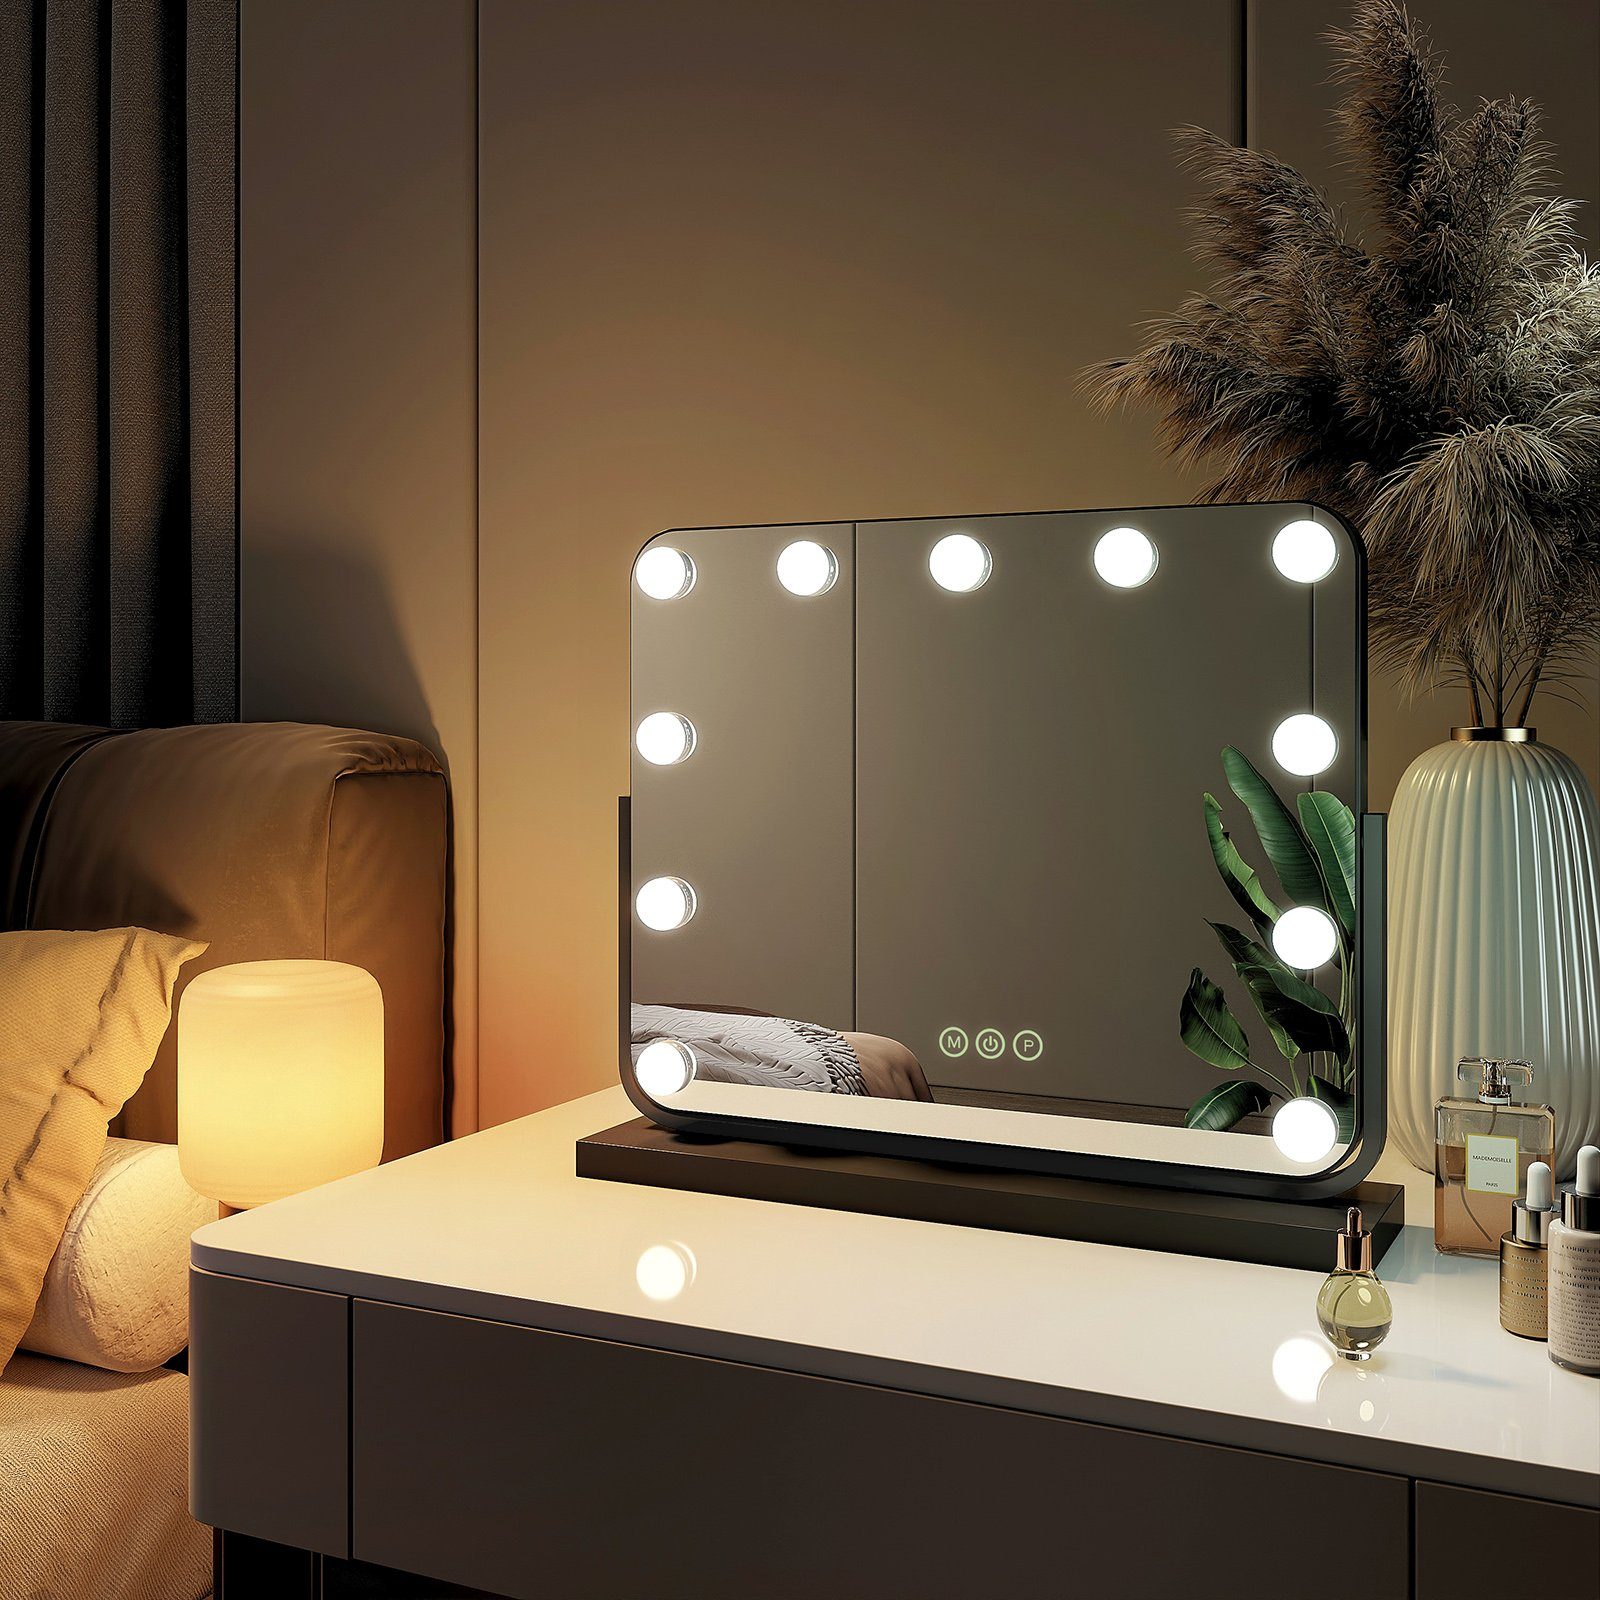 EMKE Kosmetikspiegel Hollywood Spiegel 360 Schwarz Vergrößerungsspiegel Farbe 3 Licht,Dimmbar,Speicherfunktion,7 x Beleuchtung Drehbar mit Tischspiegel, °